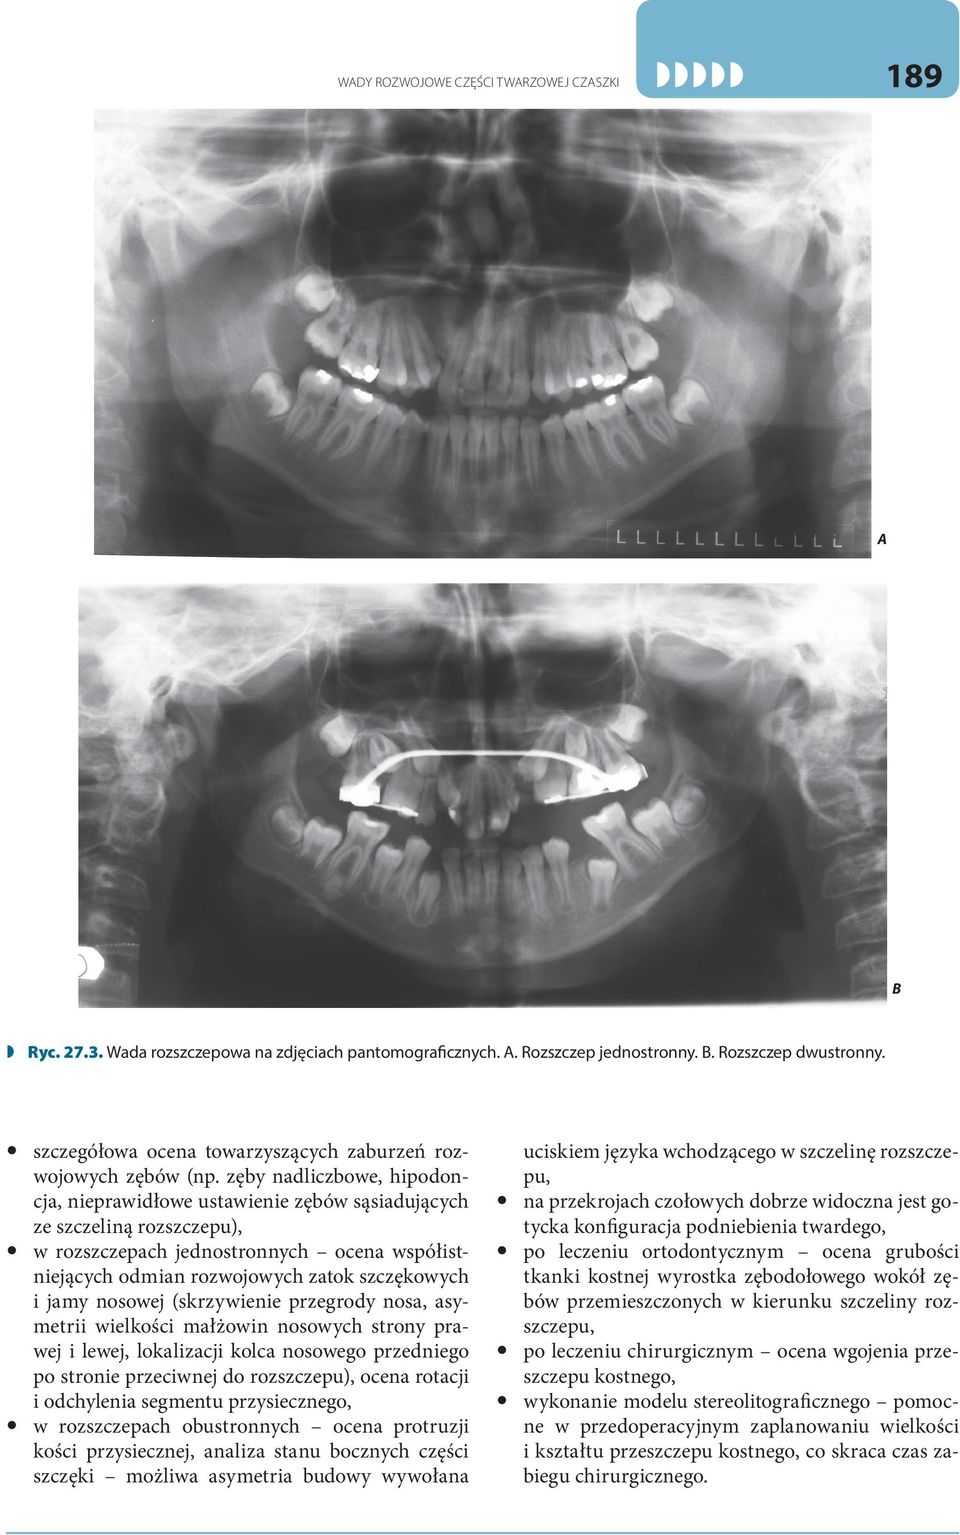 zęby nadliczbowe, hipodoncja, nieprawidłowe ustawienie zębów sąsiadujących ze szczeliną rozszczepu), w rozszczepach jednostronnych ocena współistniejących odmian rozwojowych zatok szczękowych i jamy